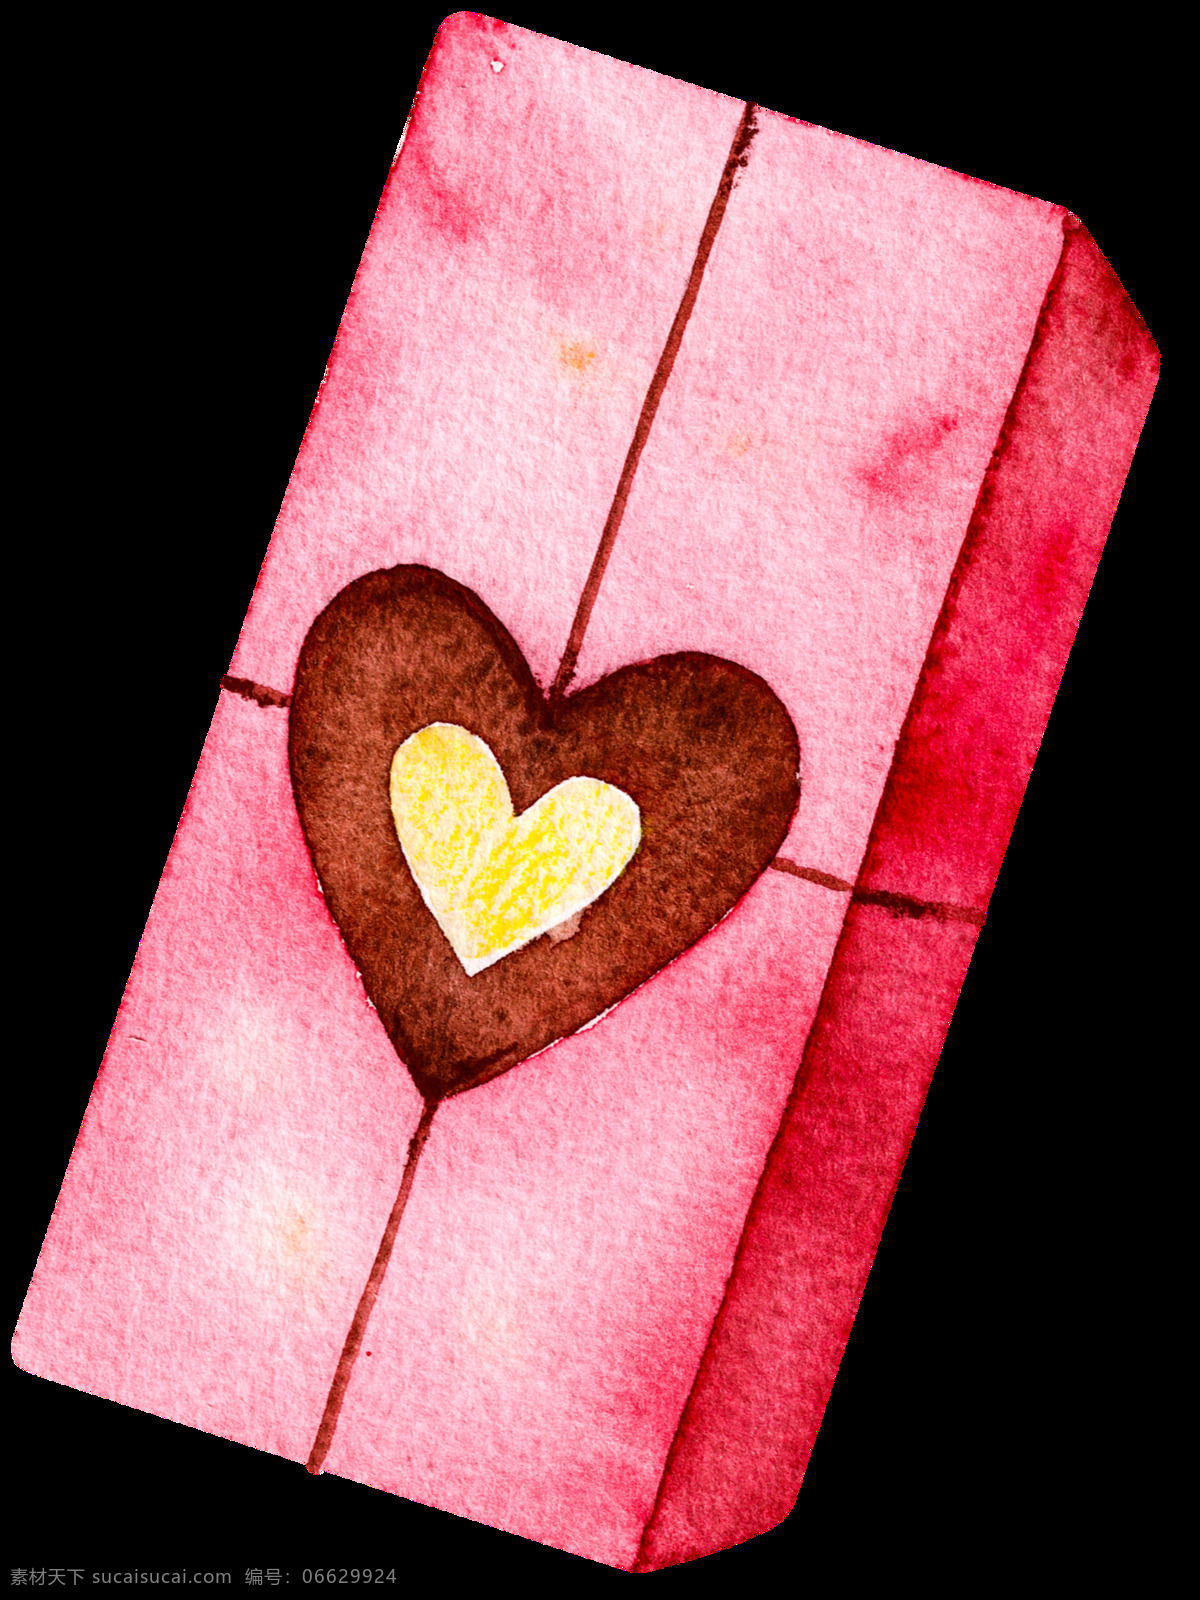 红心 礼盒 透明 礼物 爱情 矢量素材 设计素材 平面素材